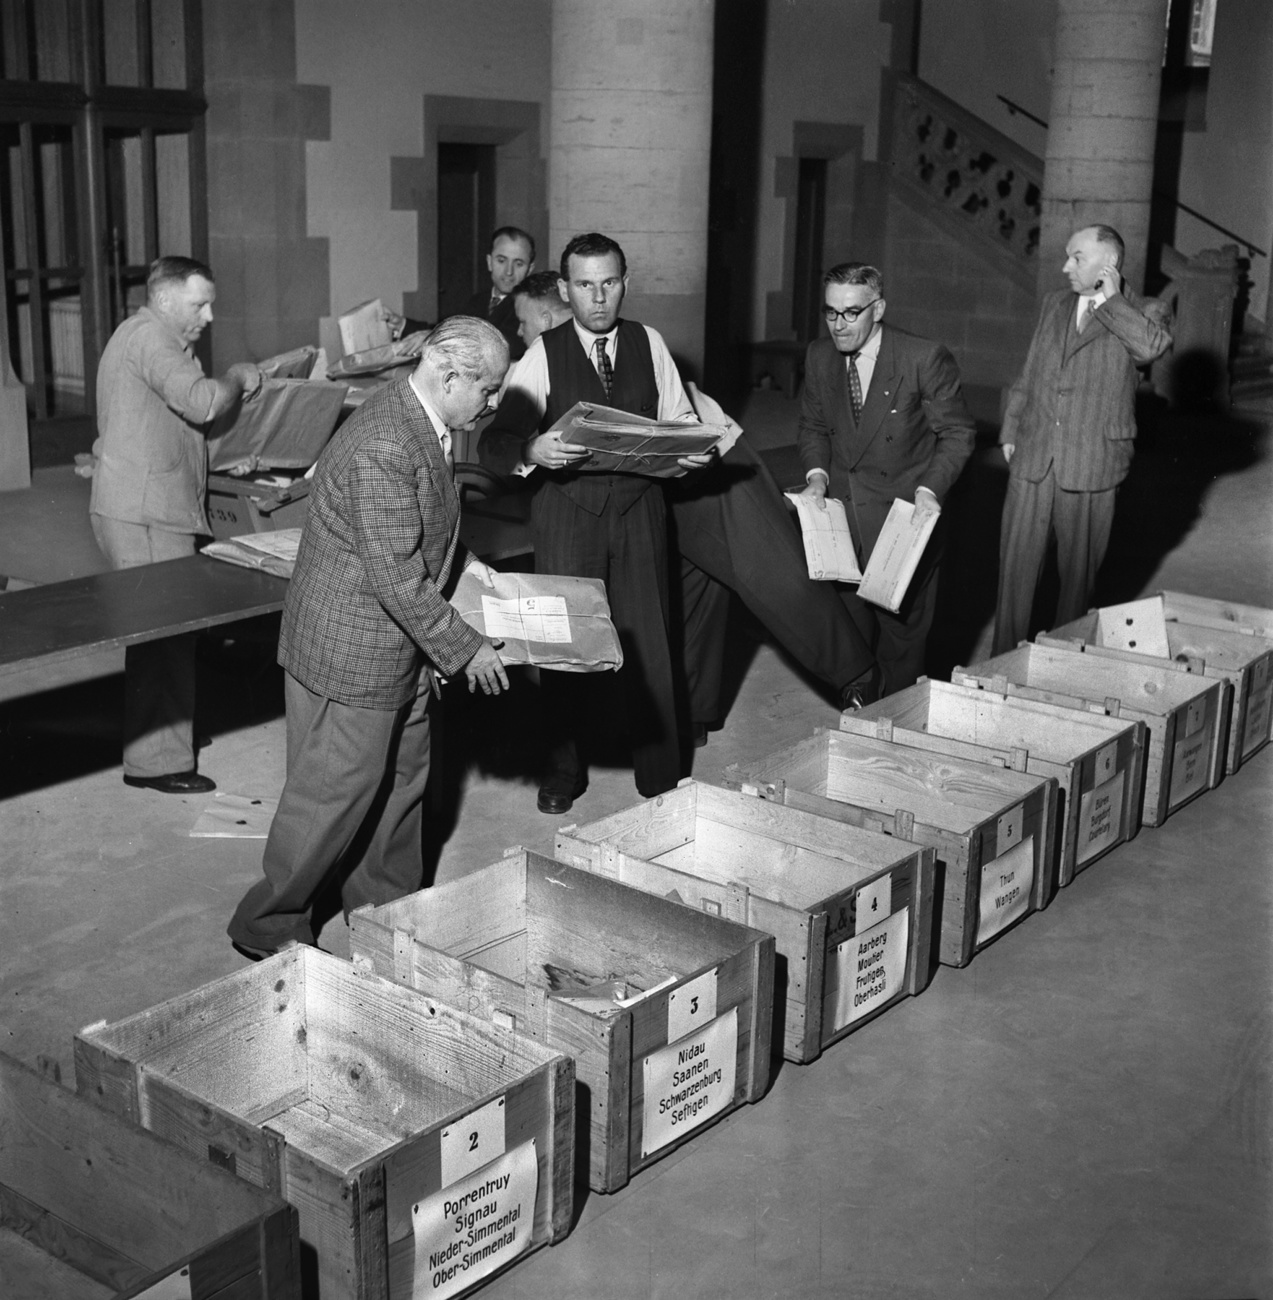 Wahlhelfer sortieren eingehende Post im 1951